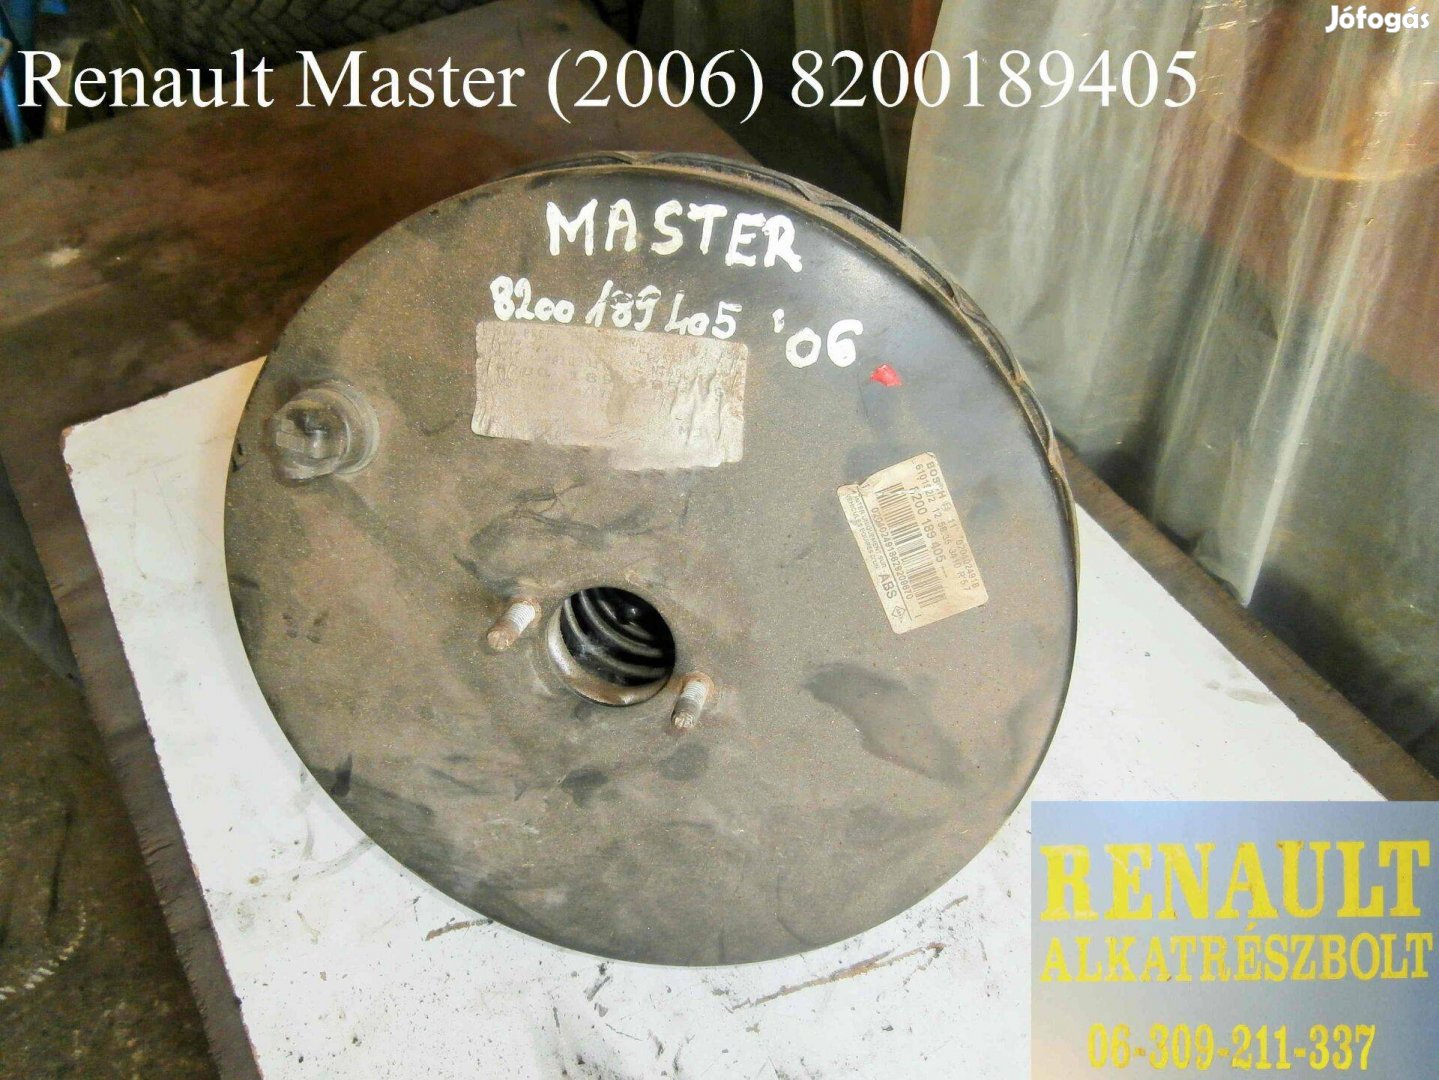 Renault Master 2006 8200189405 Fék-szervódob